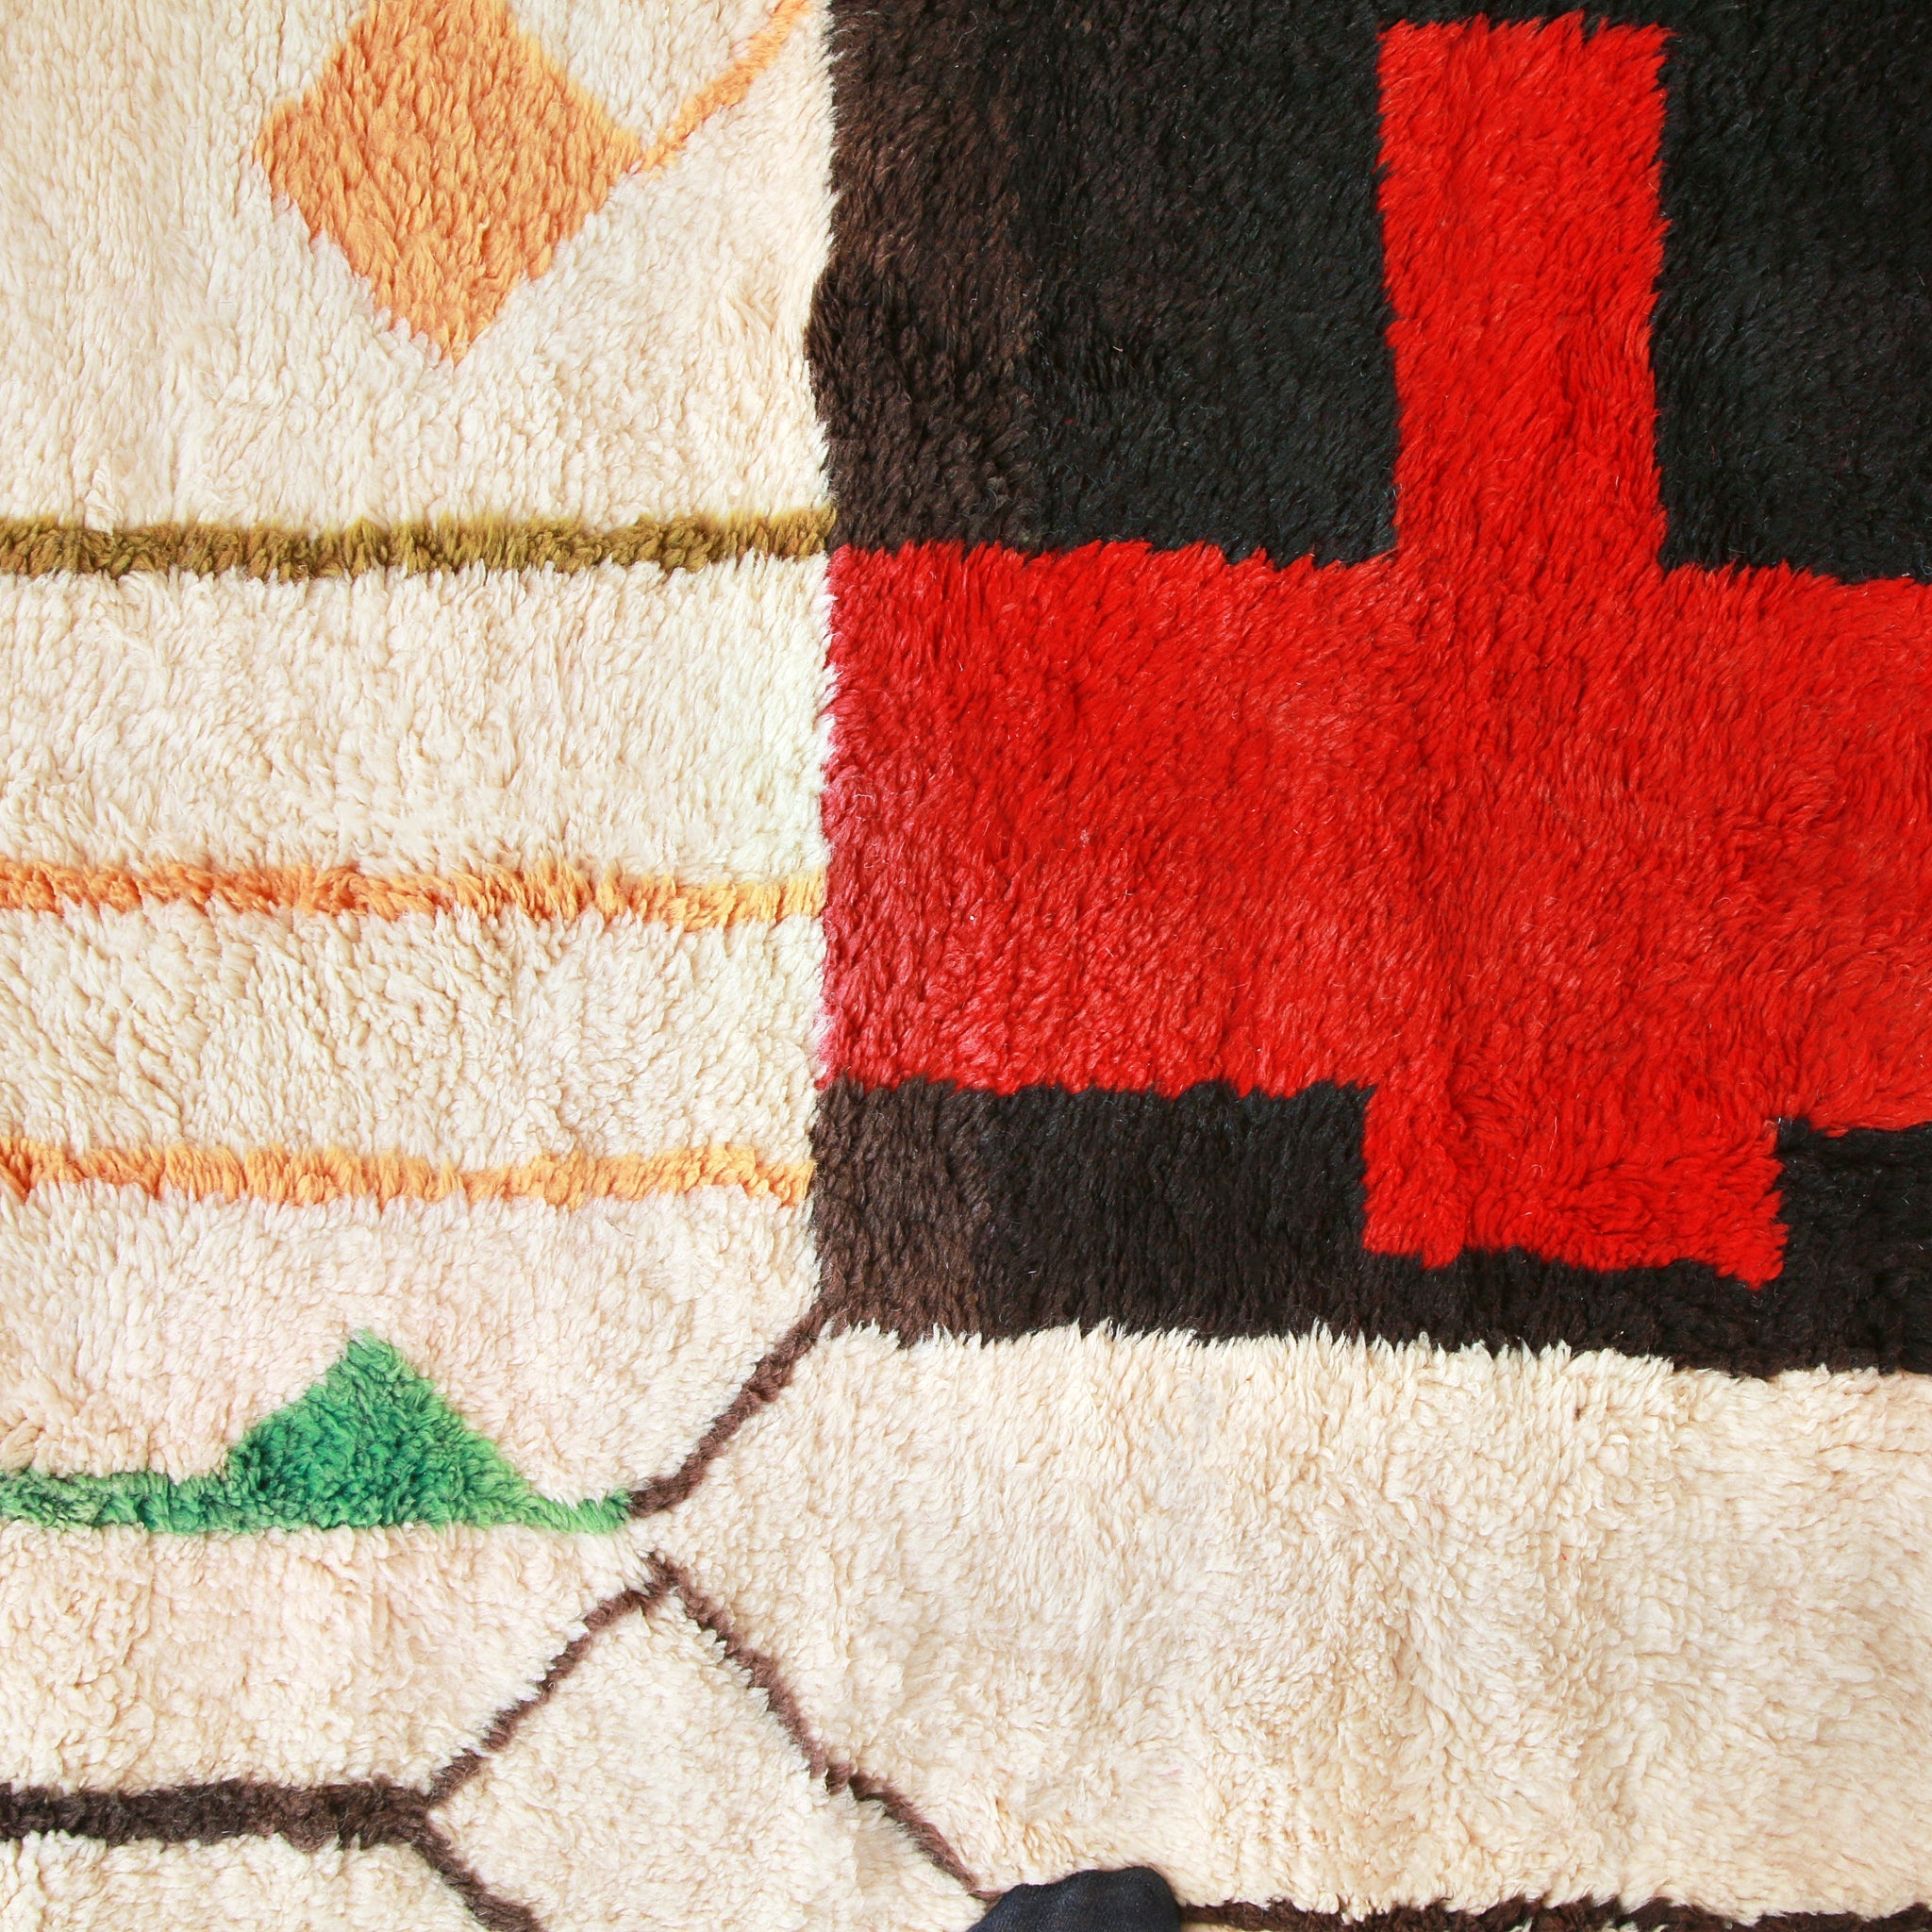 particolare della creatività di un tappeto beni mrir, linee dai colori pastello vere e araniconi e una coce rossa all'interno di un rettangolo marrone scuro